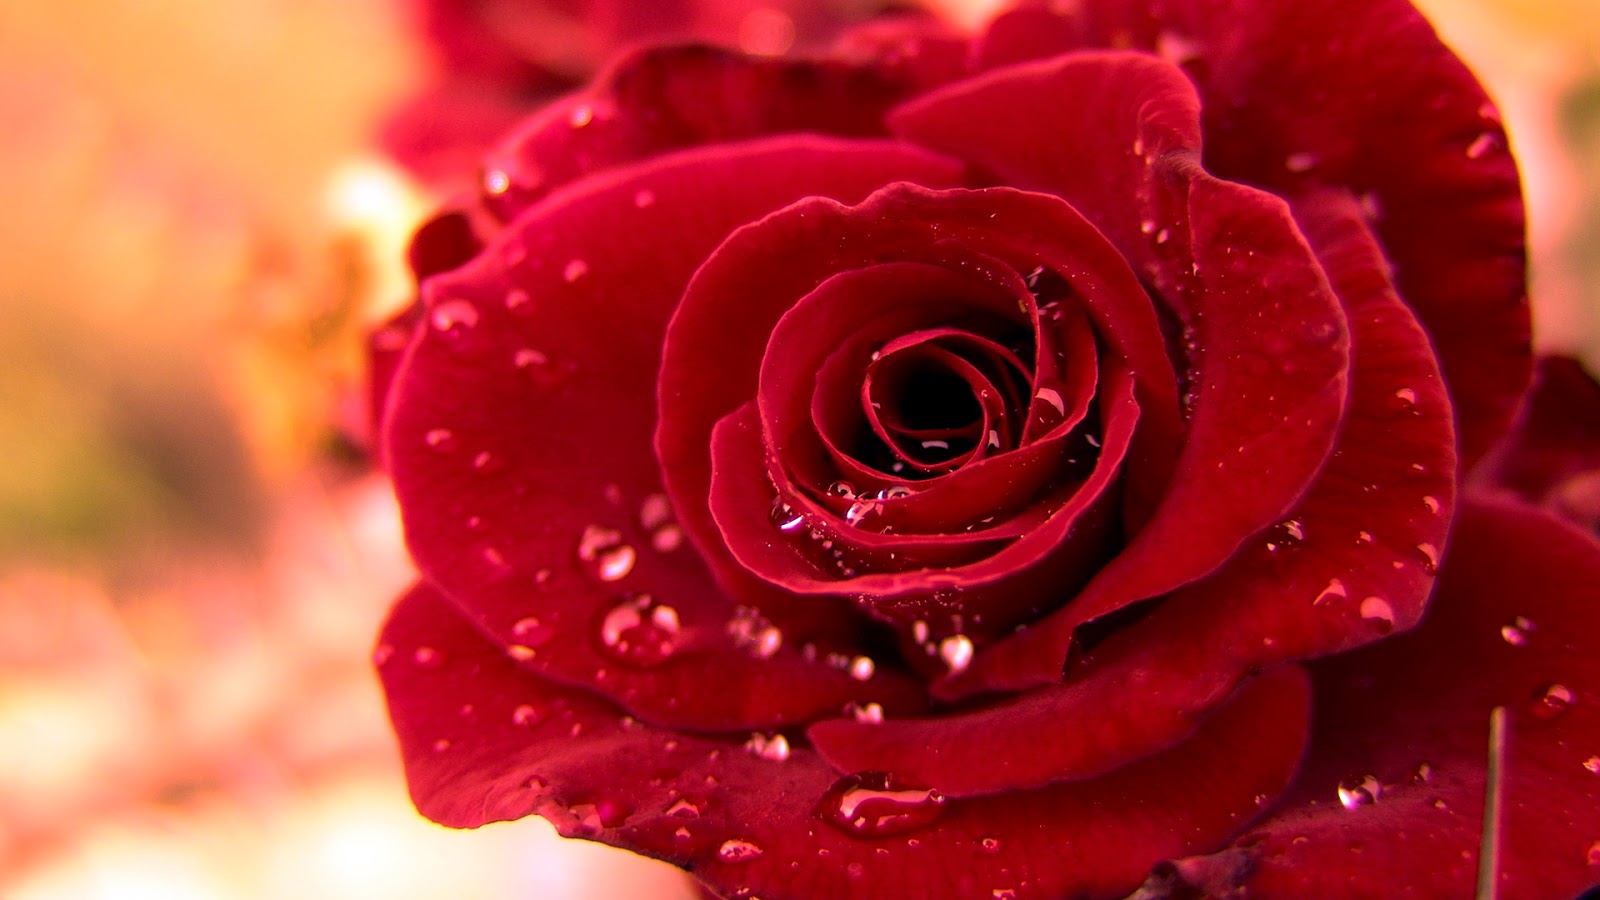  WALLPAPER  ANDROID IPHONE  Wallpaper  Bunga  Mawar  Merah